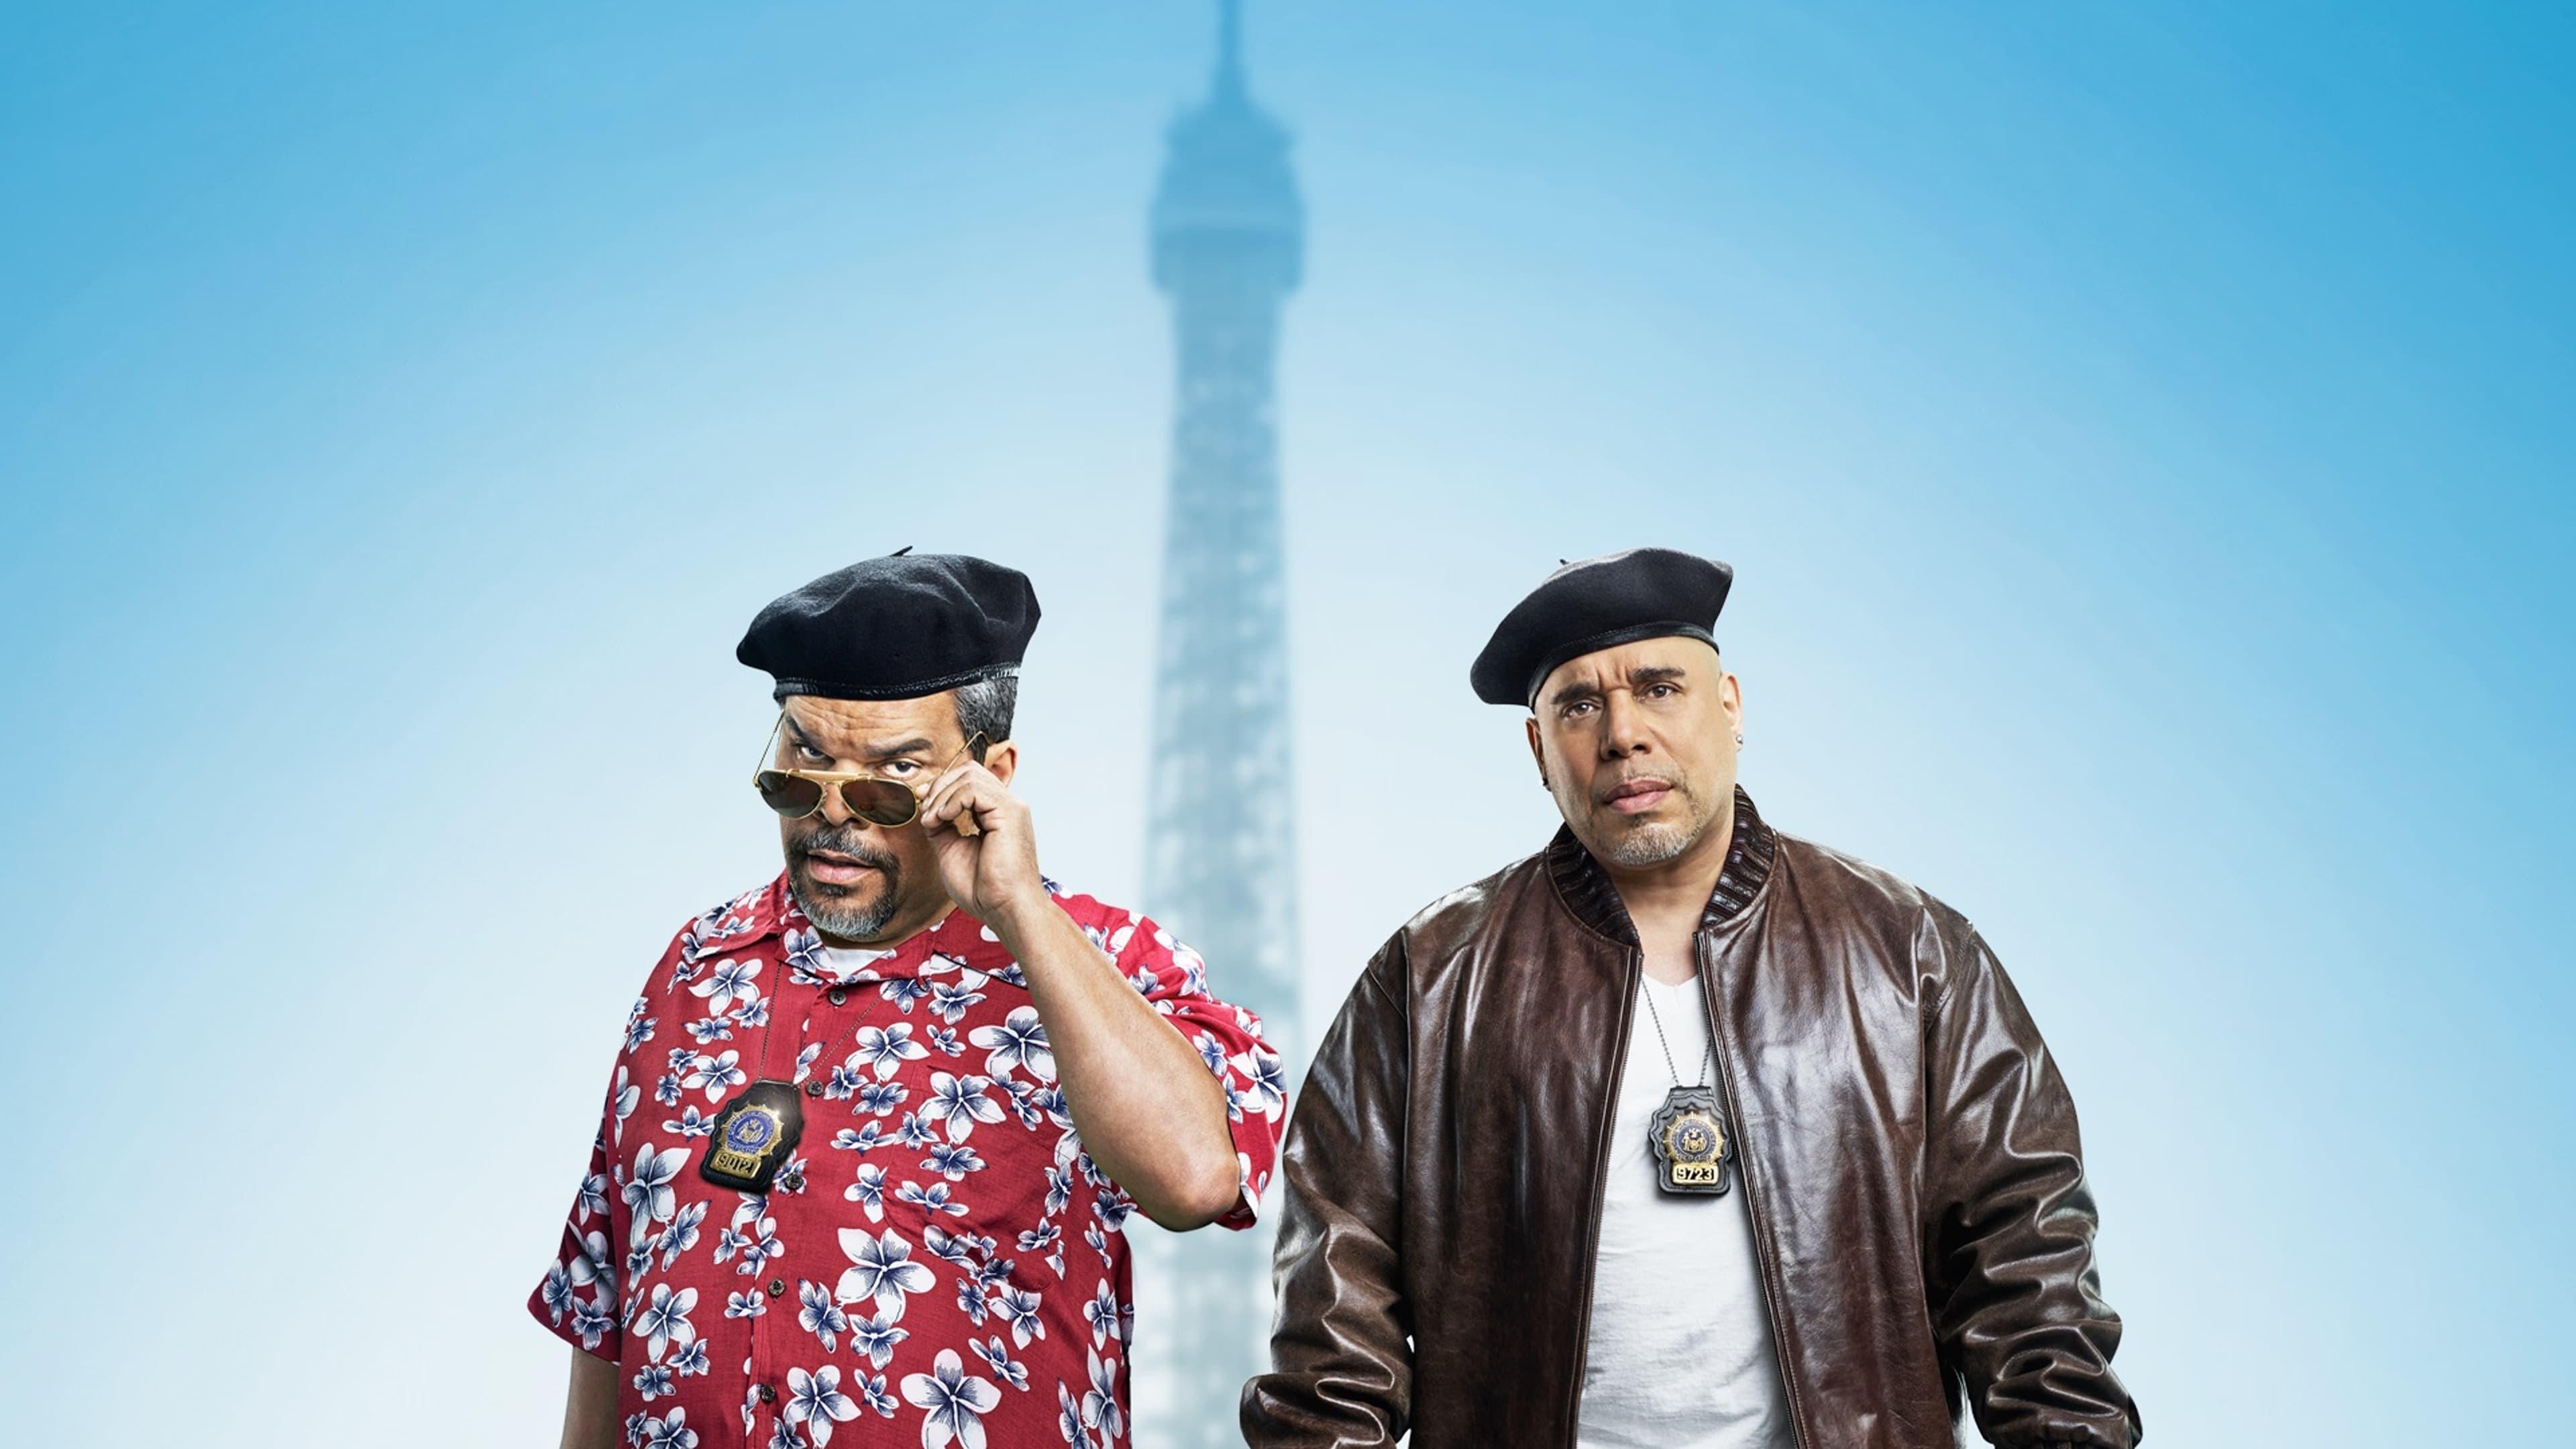 Puerto Ricans in Paris backdrop